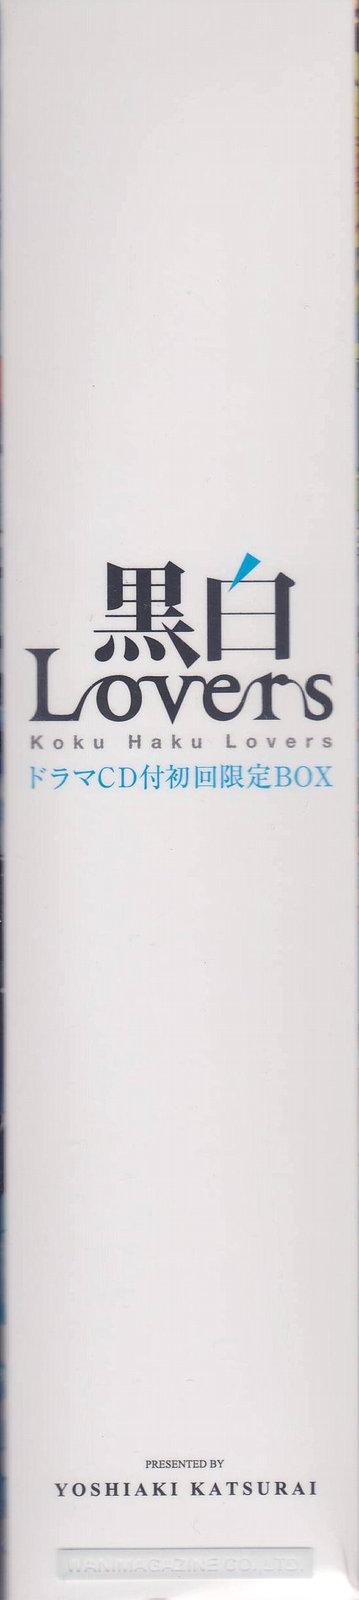 Kokuhaku Lovers 220